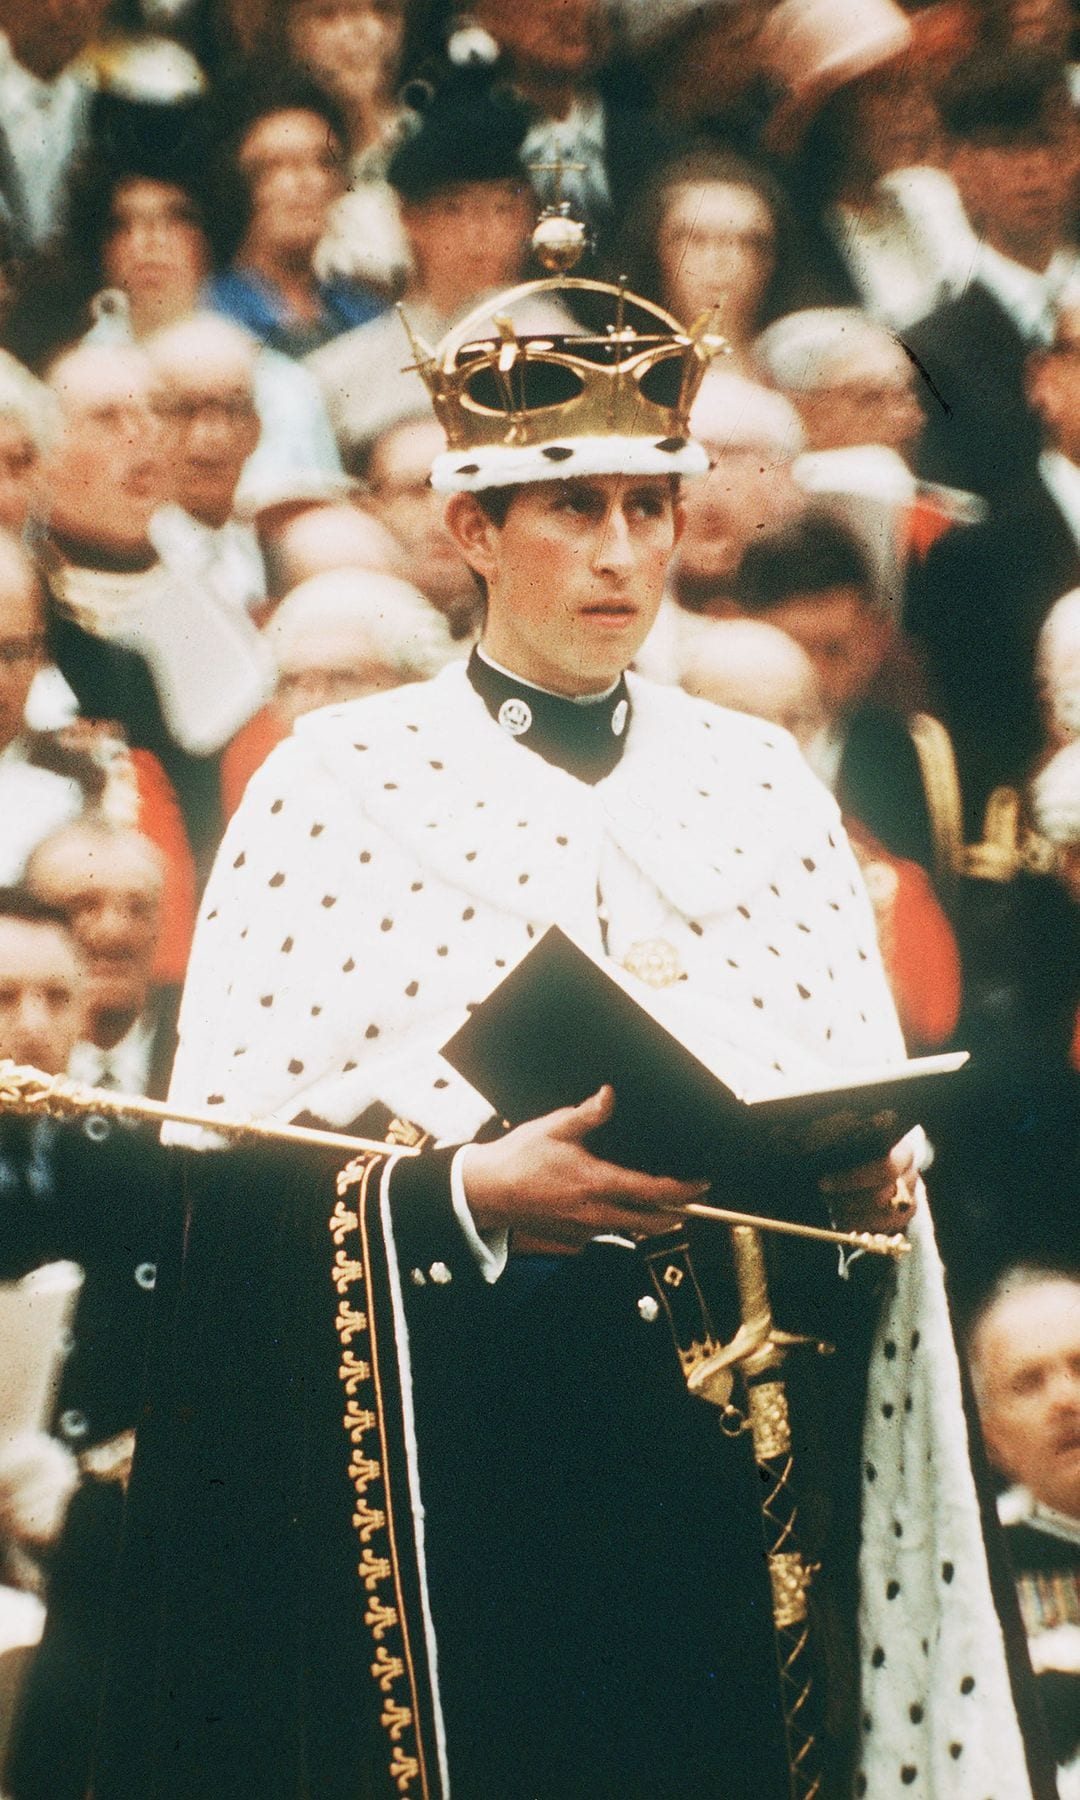 El príncipe Carlos, despues rey Carlos III, con 21 años siendo investido príncipe de Gales en julio de 1969